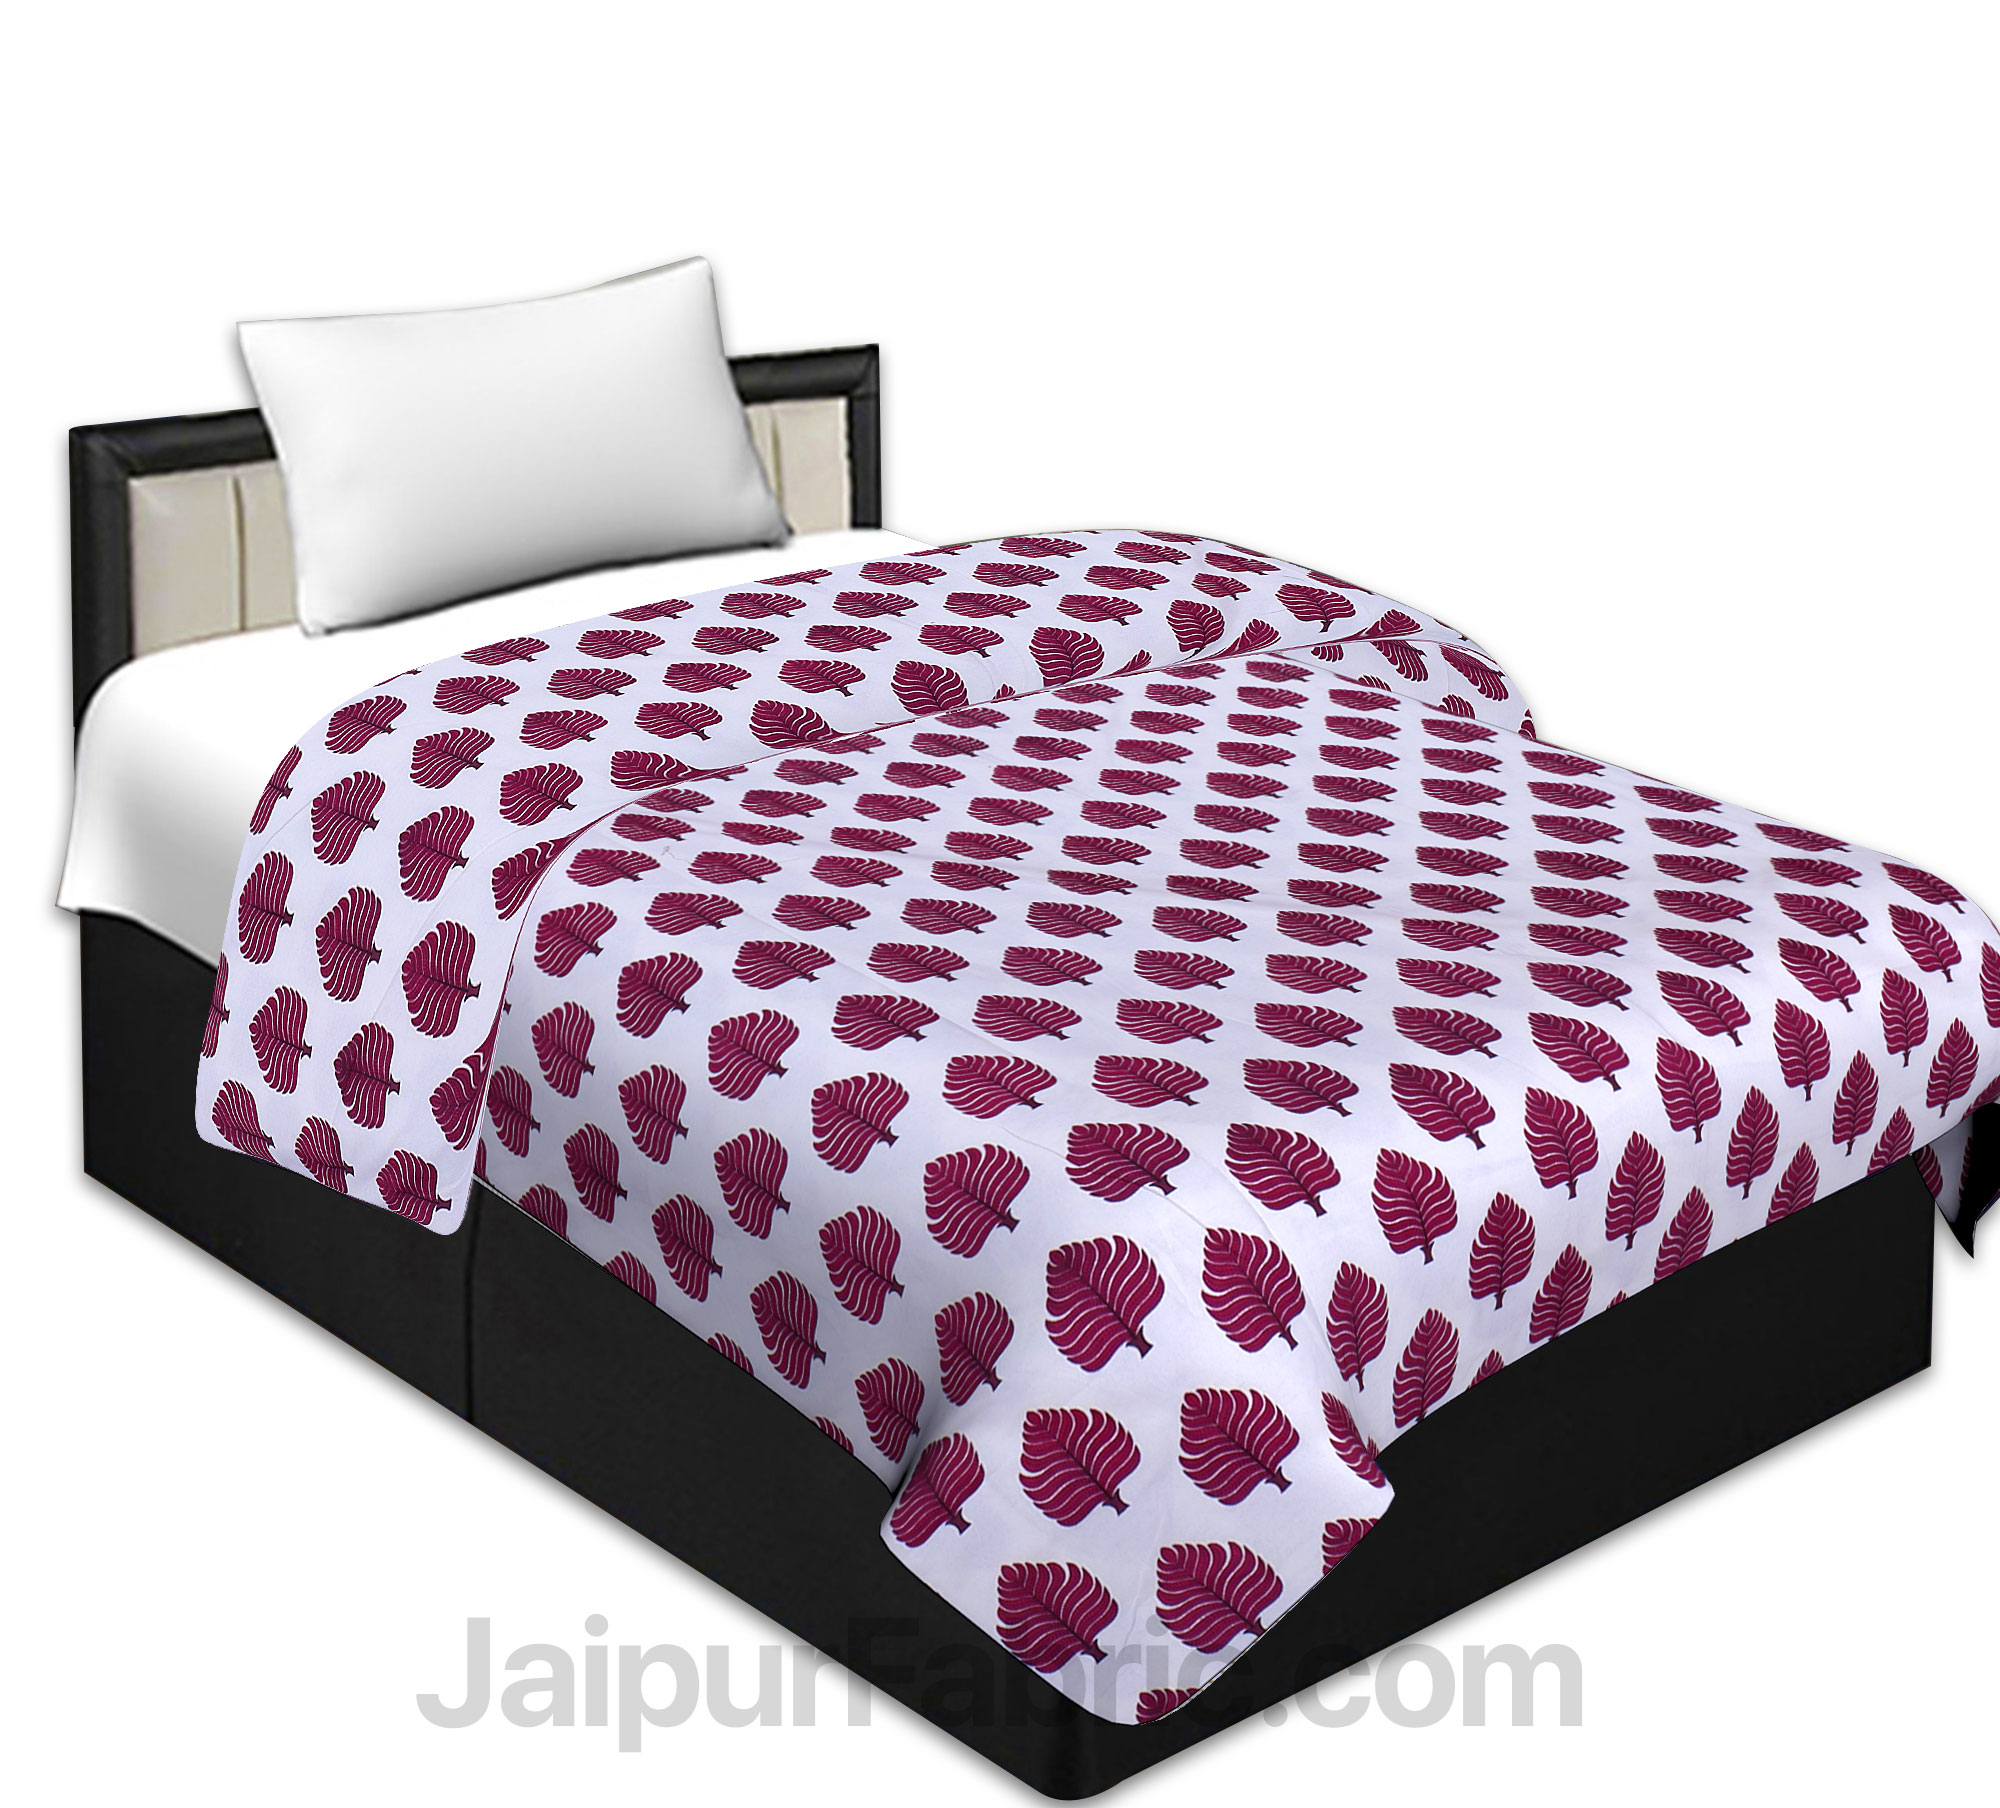 Pure Cotton Petal Print Reversible Single Bed Blanket/ Duvet/Quilt/AC Dohar